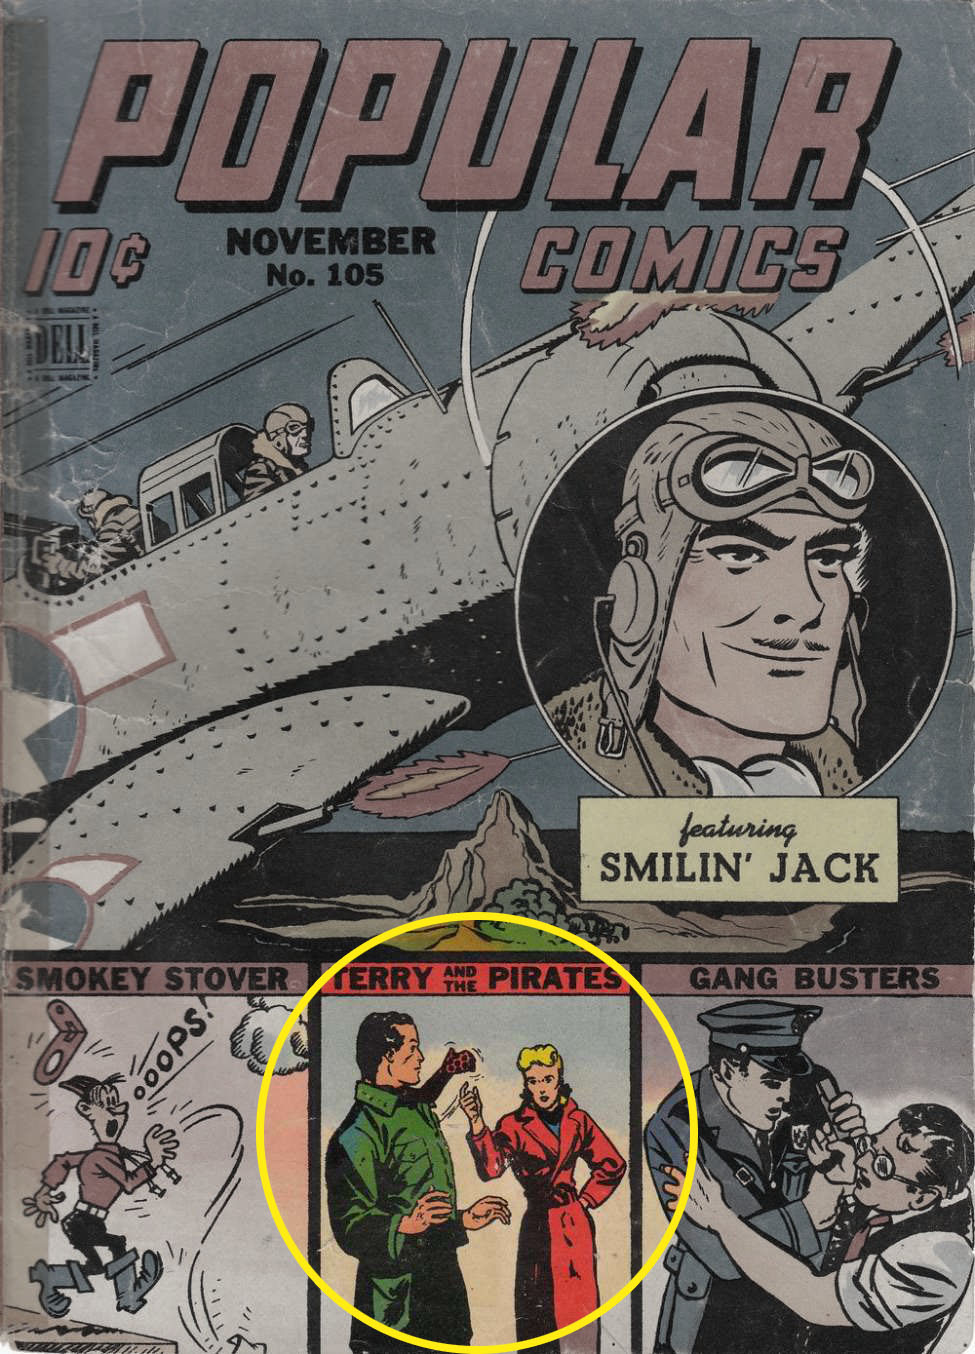 Popular Comics #105, Dell